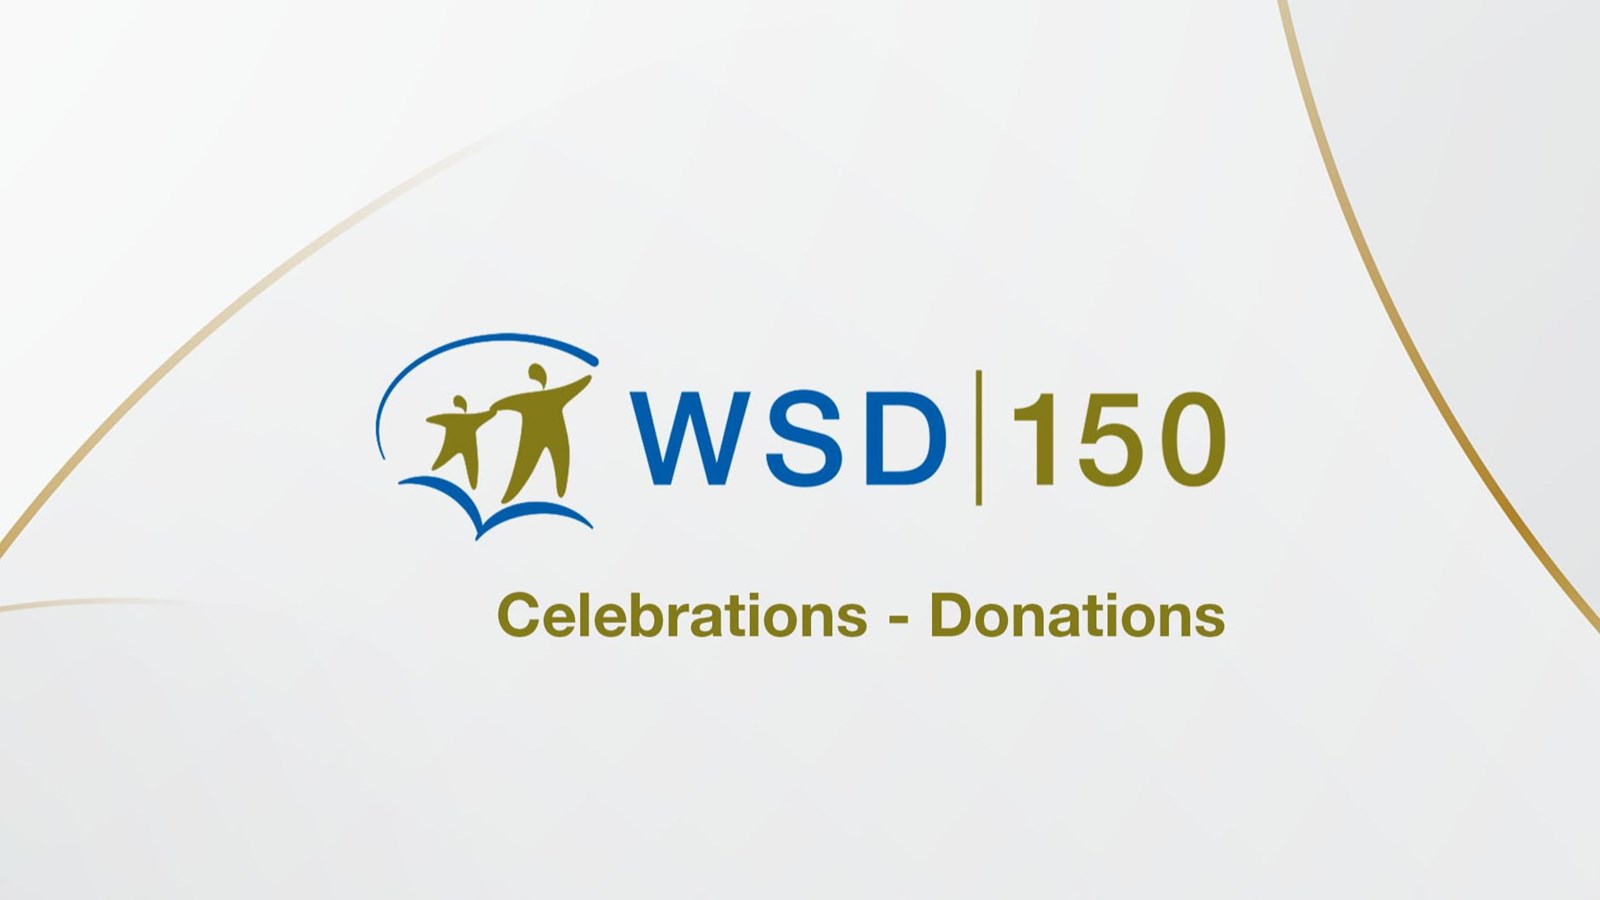 最新版水务署150周年庆祝活动-捐款